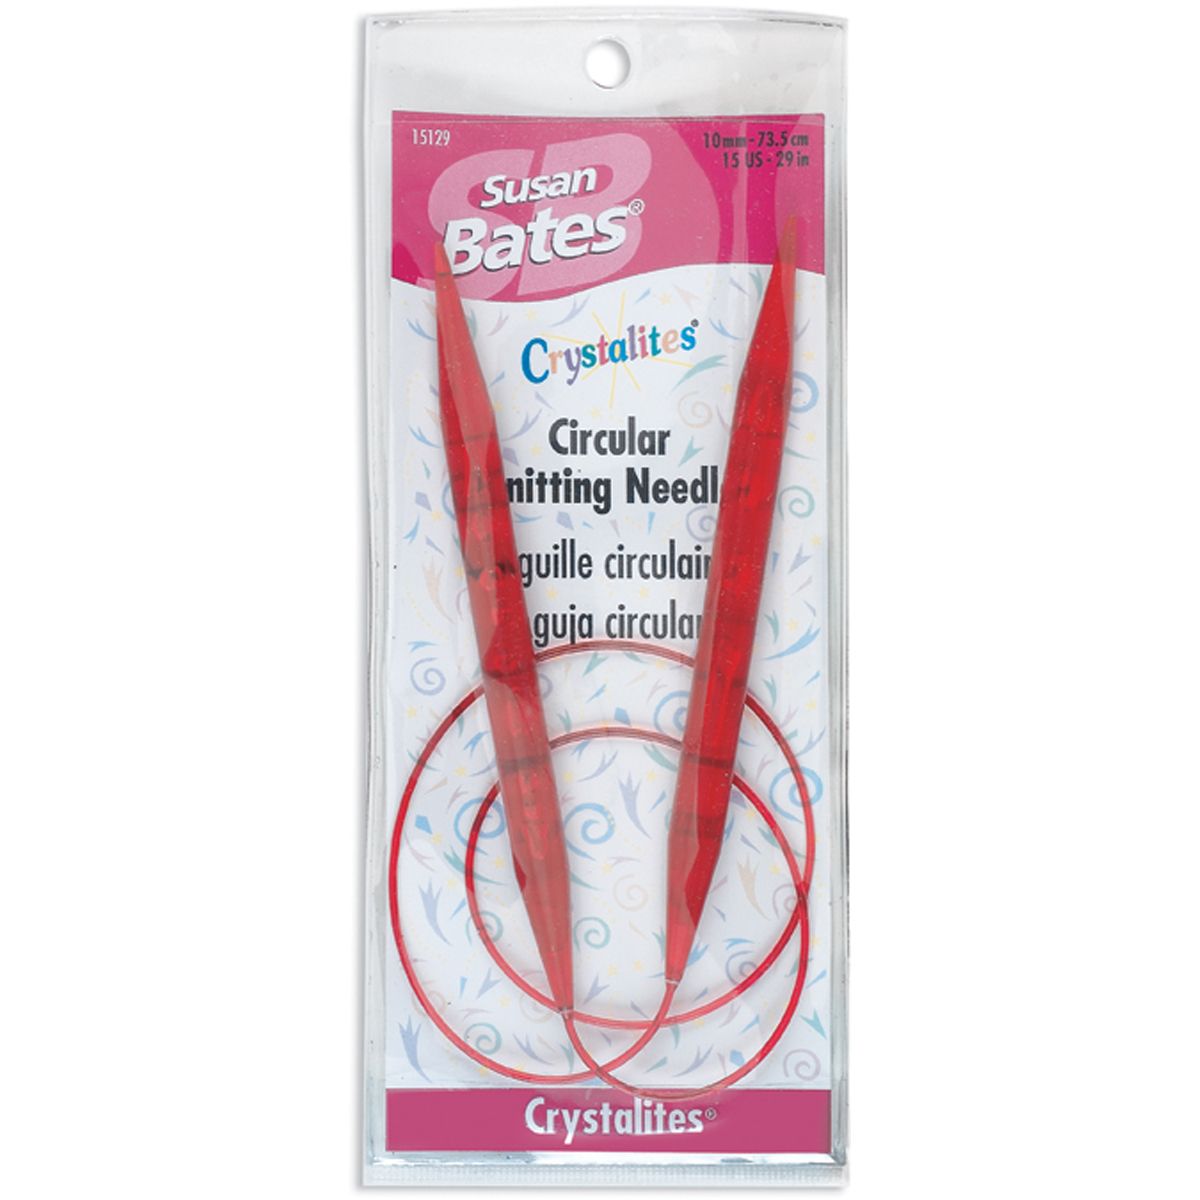 Susan Bates Crystalites Circular Knitting Needle 29" Size 15 Red